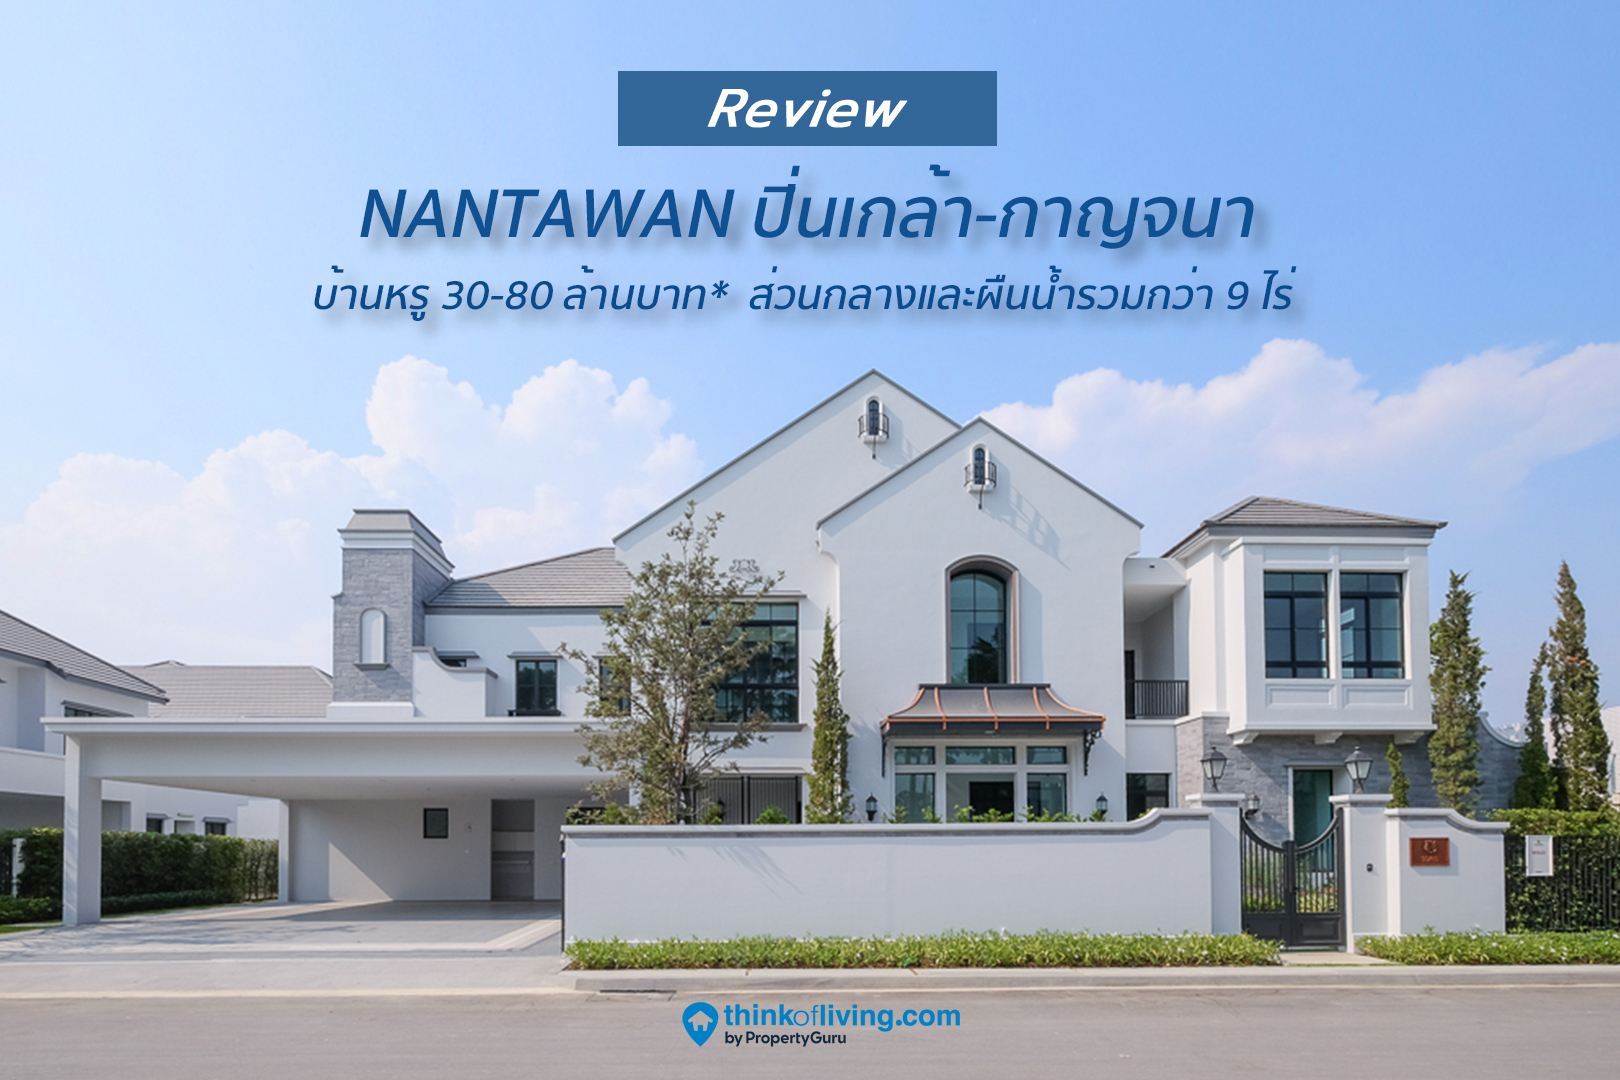 Nantawan ปิ่นเกล้า-กาญจนา บ้านเดี่ยวหรู 30-80 ล้านบาท  พร้อมส่วนกลางและผืนน้ำรวมกว่า 9 ไร่ จาก Land And Houses [รีวิวฉบับที่ 2532]  | Thinkofliving.Com